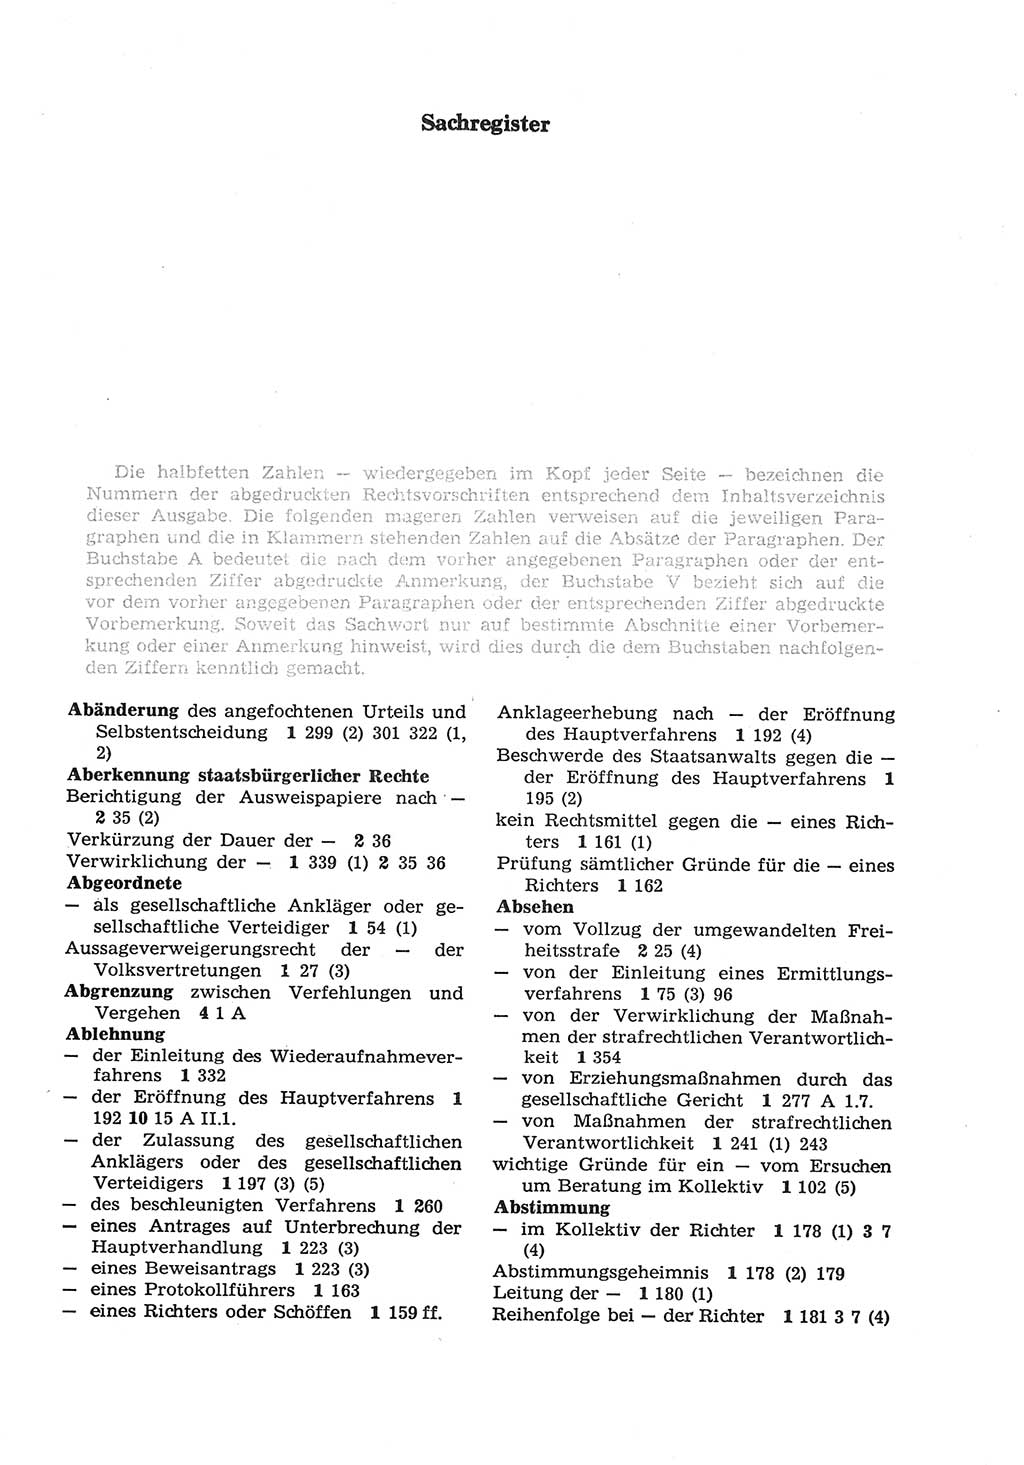 Strafprozeßordnung (StPO) der Deutschen Demokratischen Republik (DDR) sowie angrenzende Gesetze und Bestimmungen 1977, Seite 249 (StPO DDR Ges. Best. 1977, S. 249)